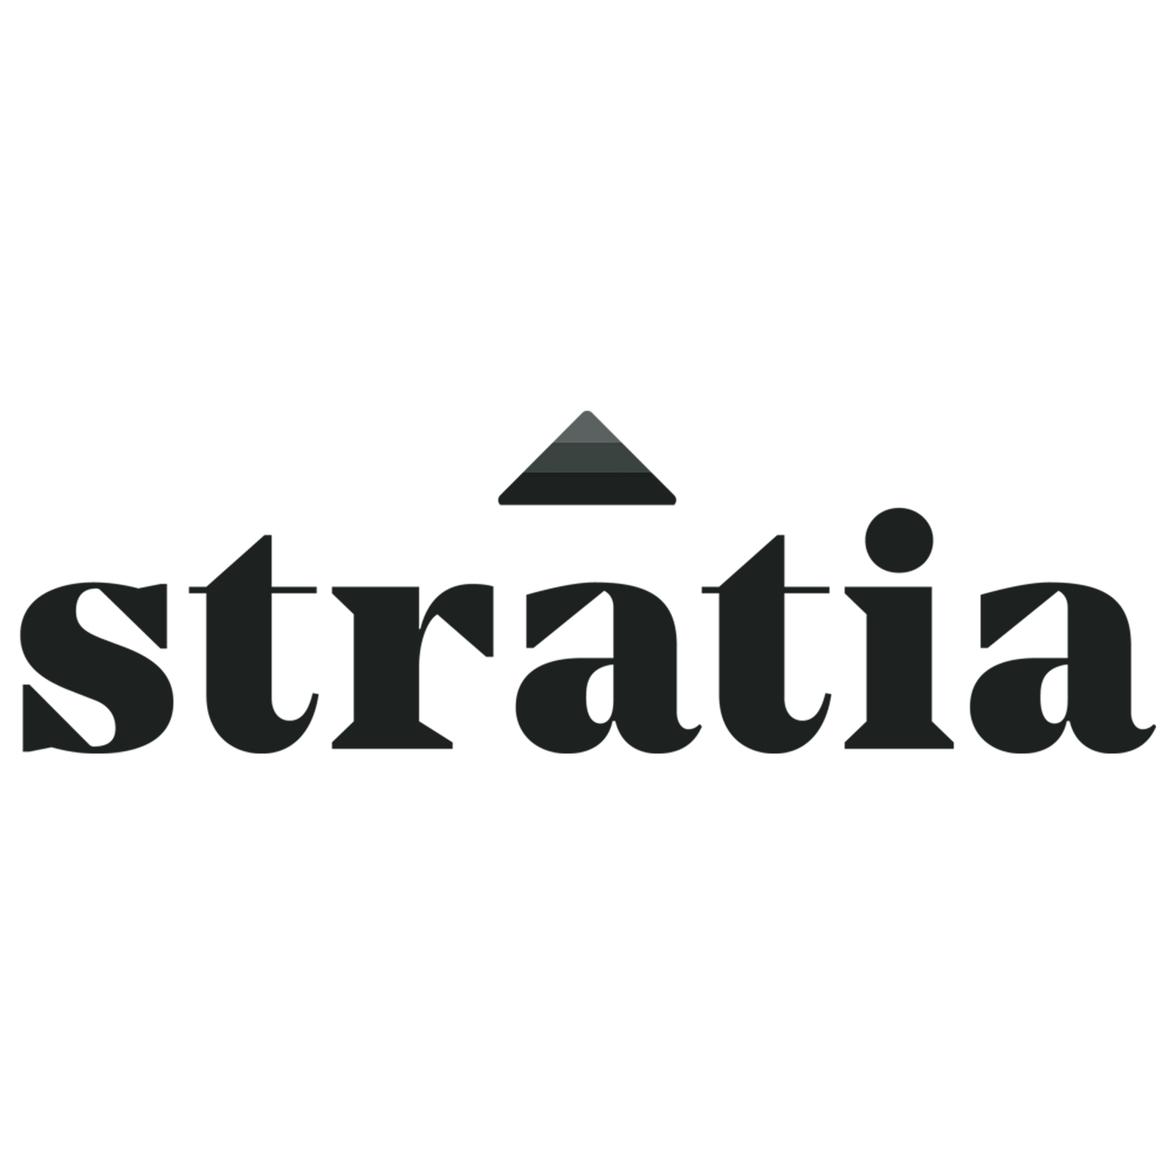 stratiaskin's images